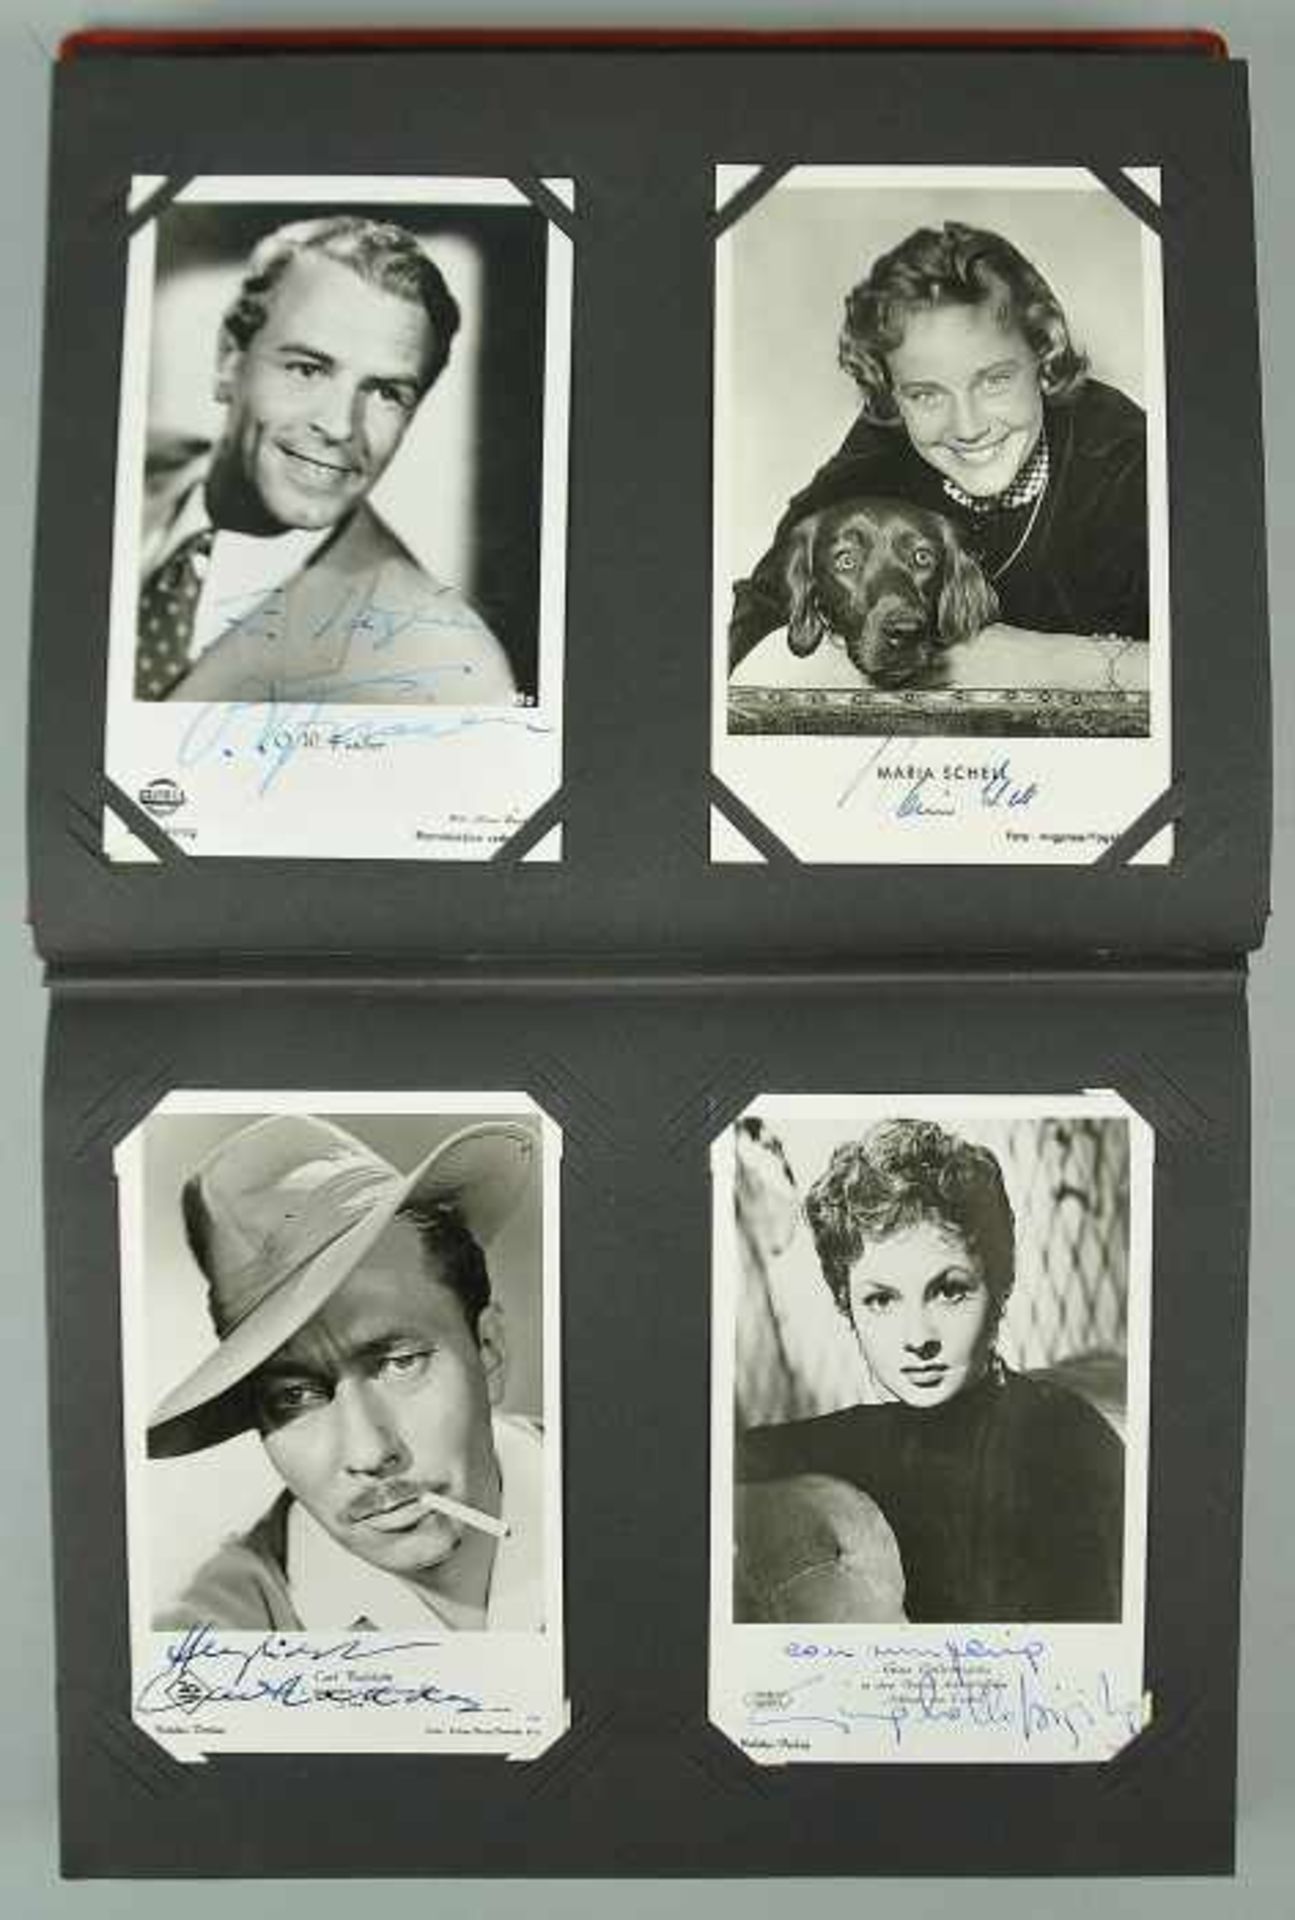 SAMMELALBUM mit Autographen von Künstlern 50er/70er Jahre, ca. 70 signierte Autogrammkarten von - Bild 12 aus 25